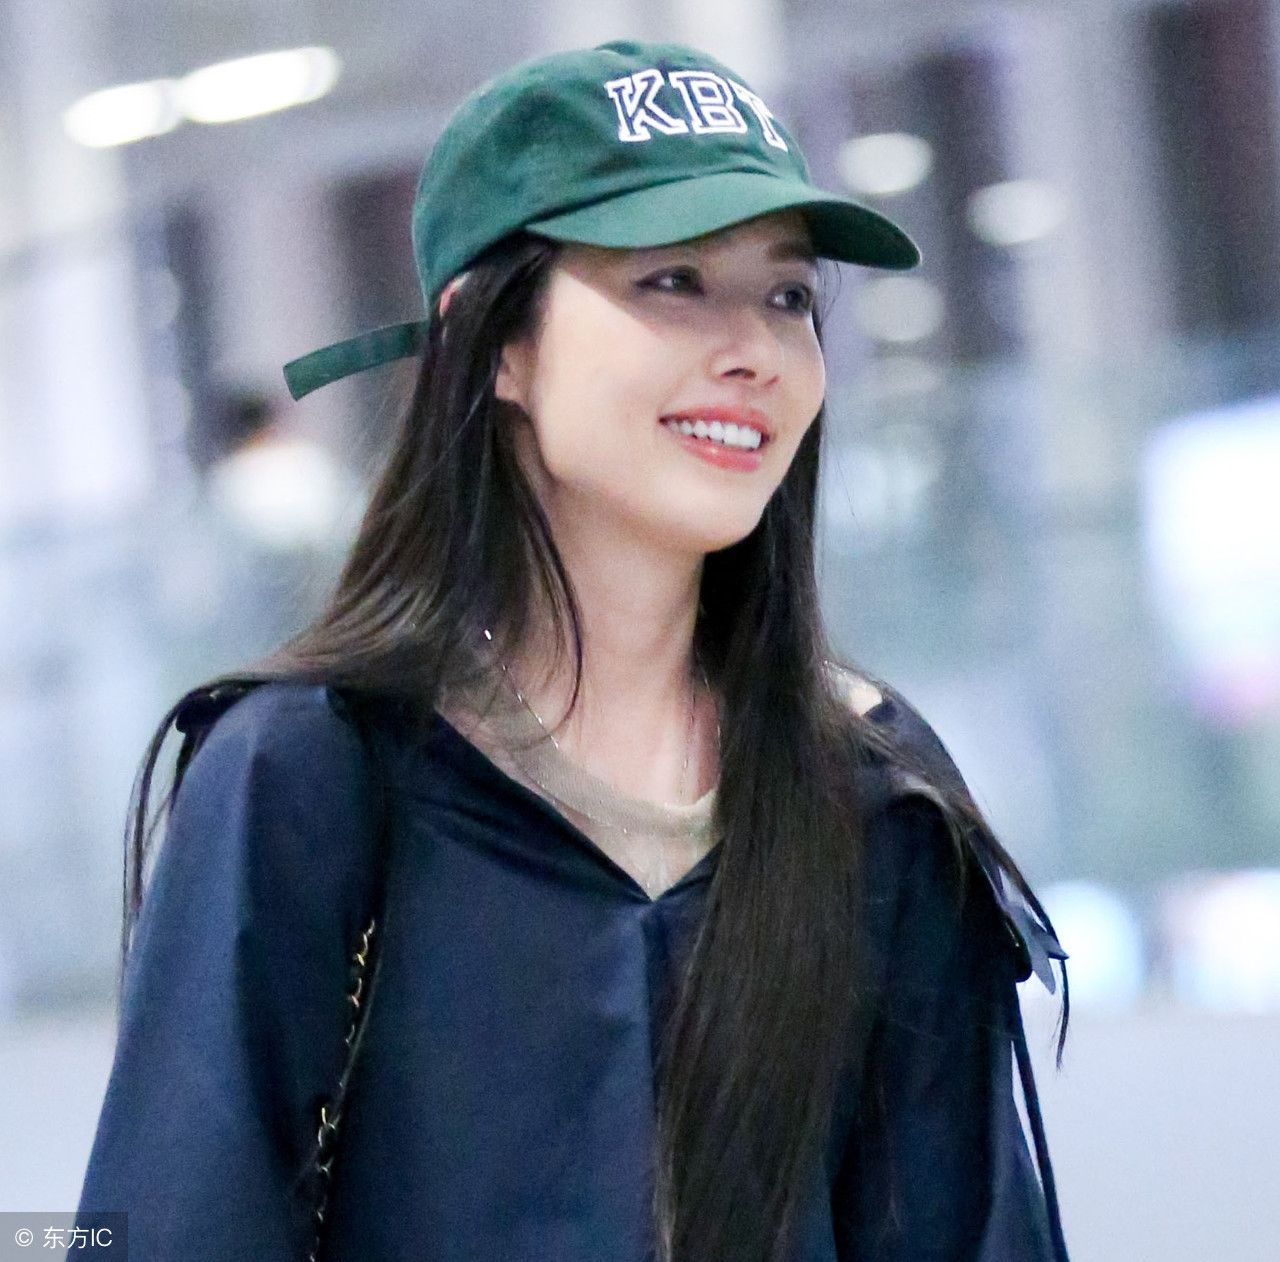 郭碧婷现身北京机场,头戴绿色棒球帽,长发飘飘